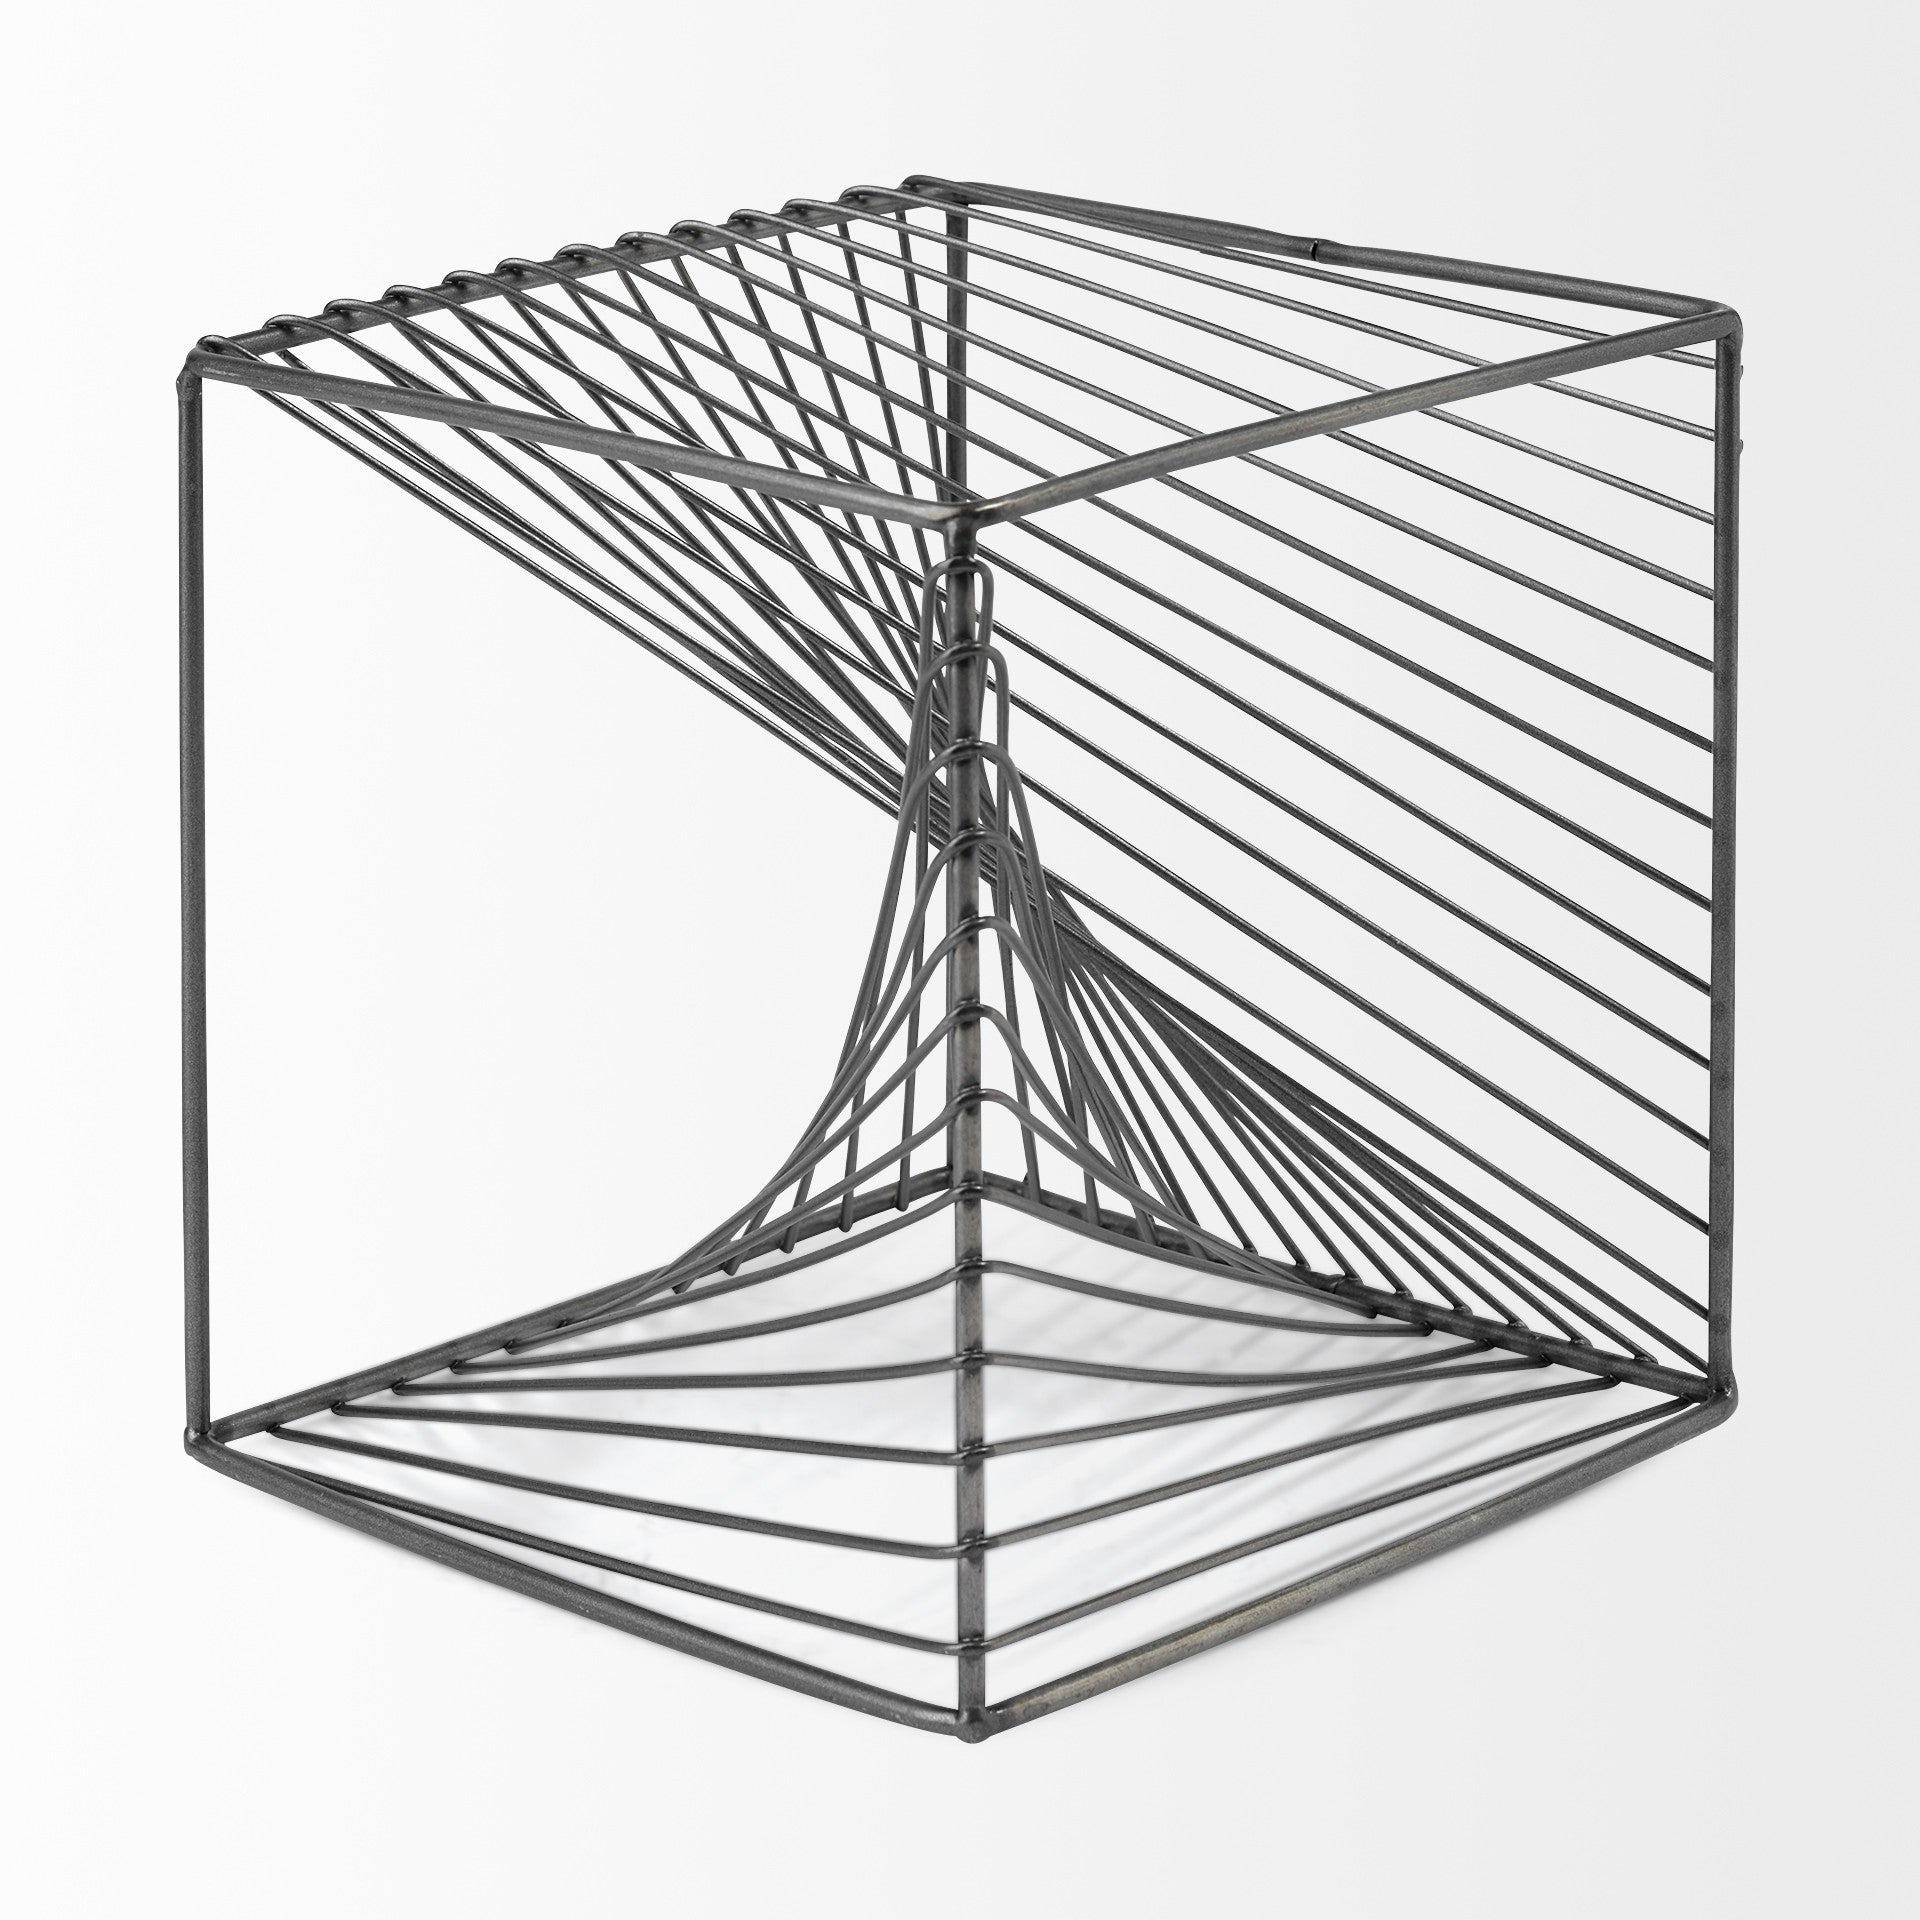 Contemporary Gray Metal Cubed Decor Piece